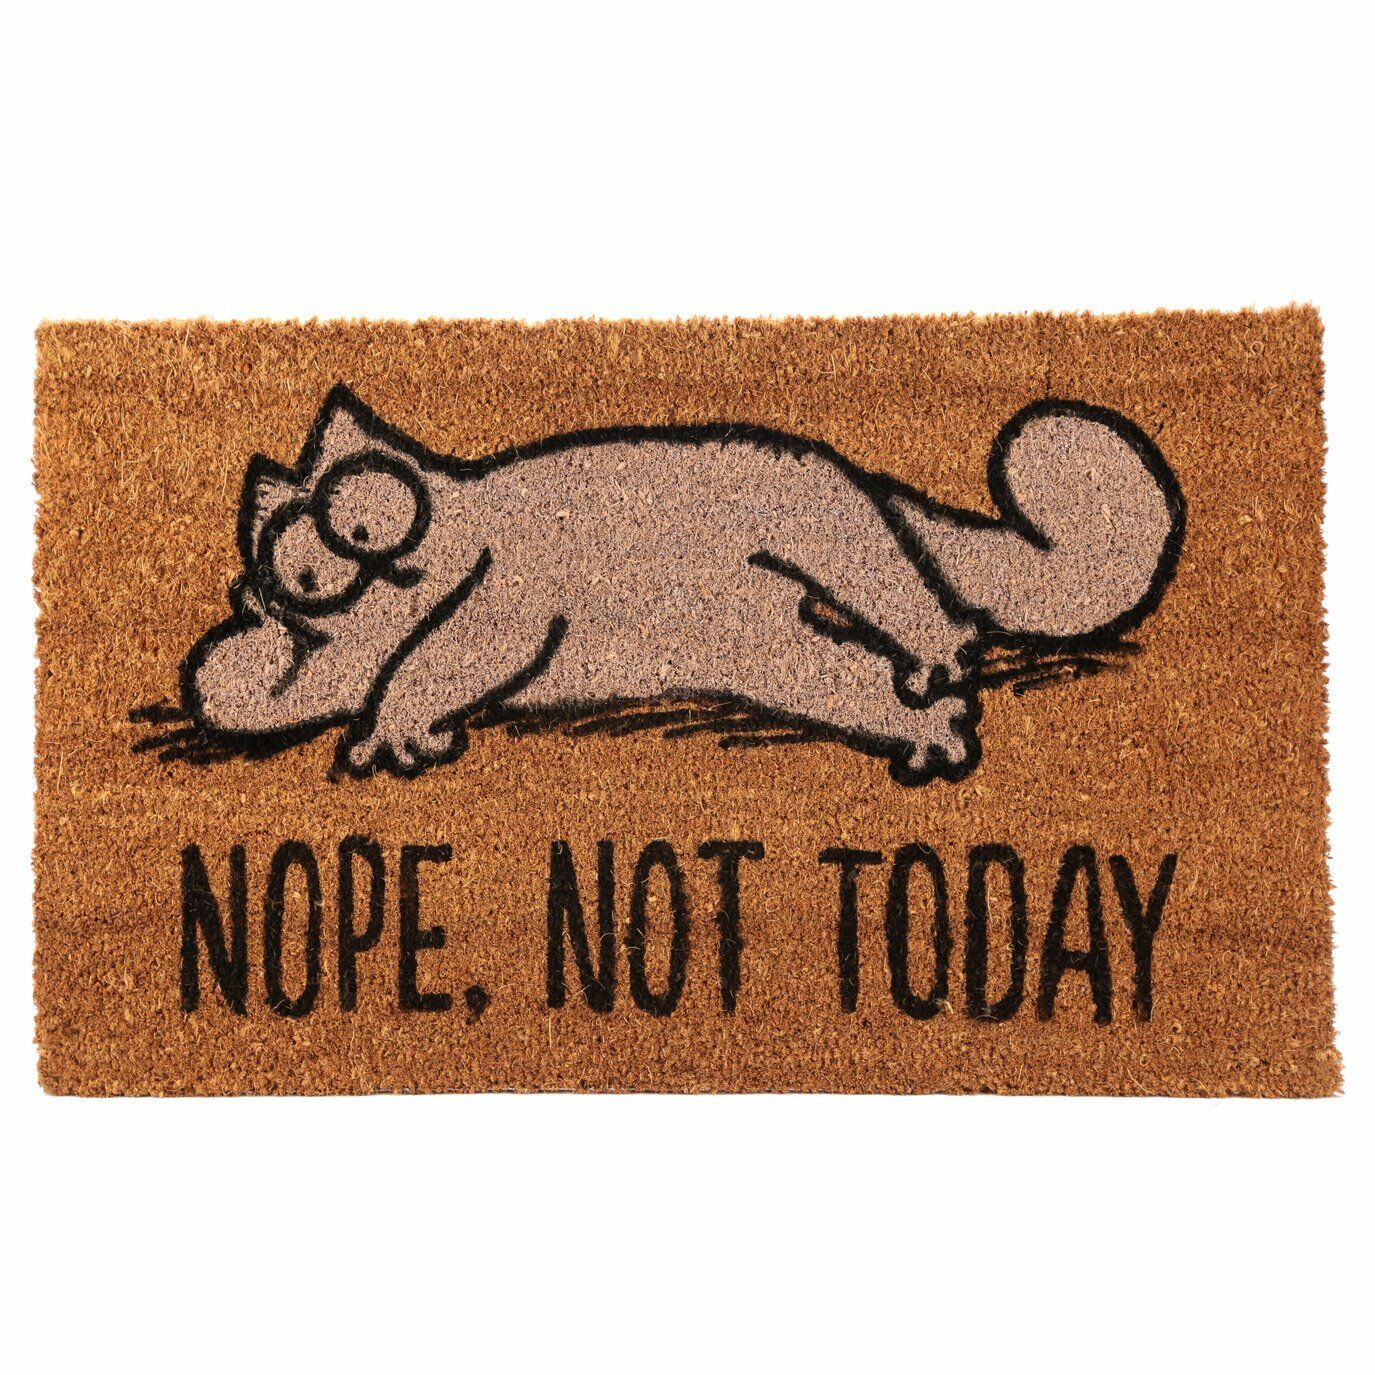 Pres pentru usa - Simon\'s Cat, Nope, not today | Puckator